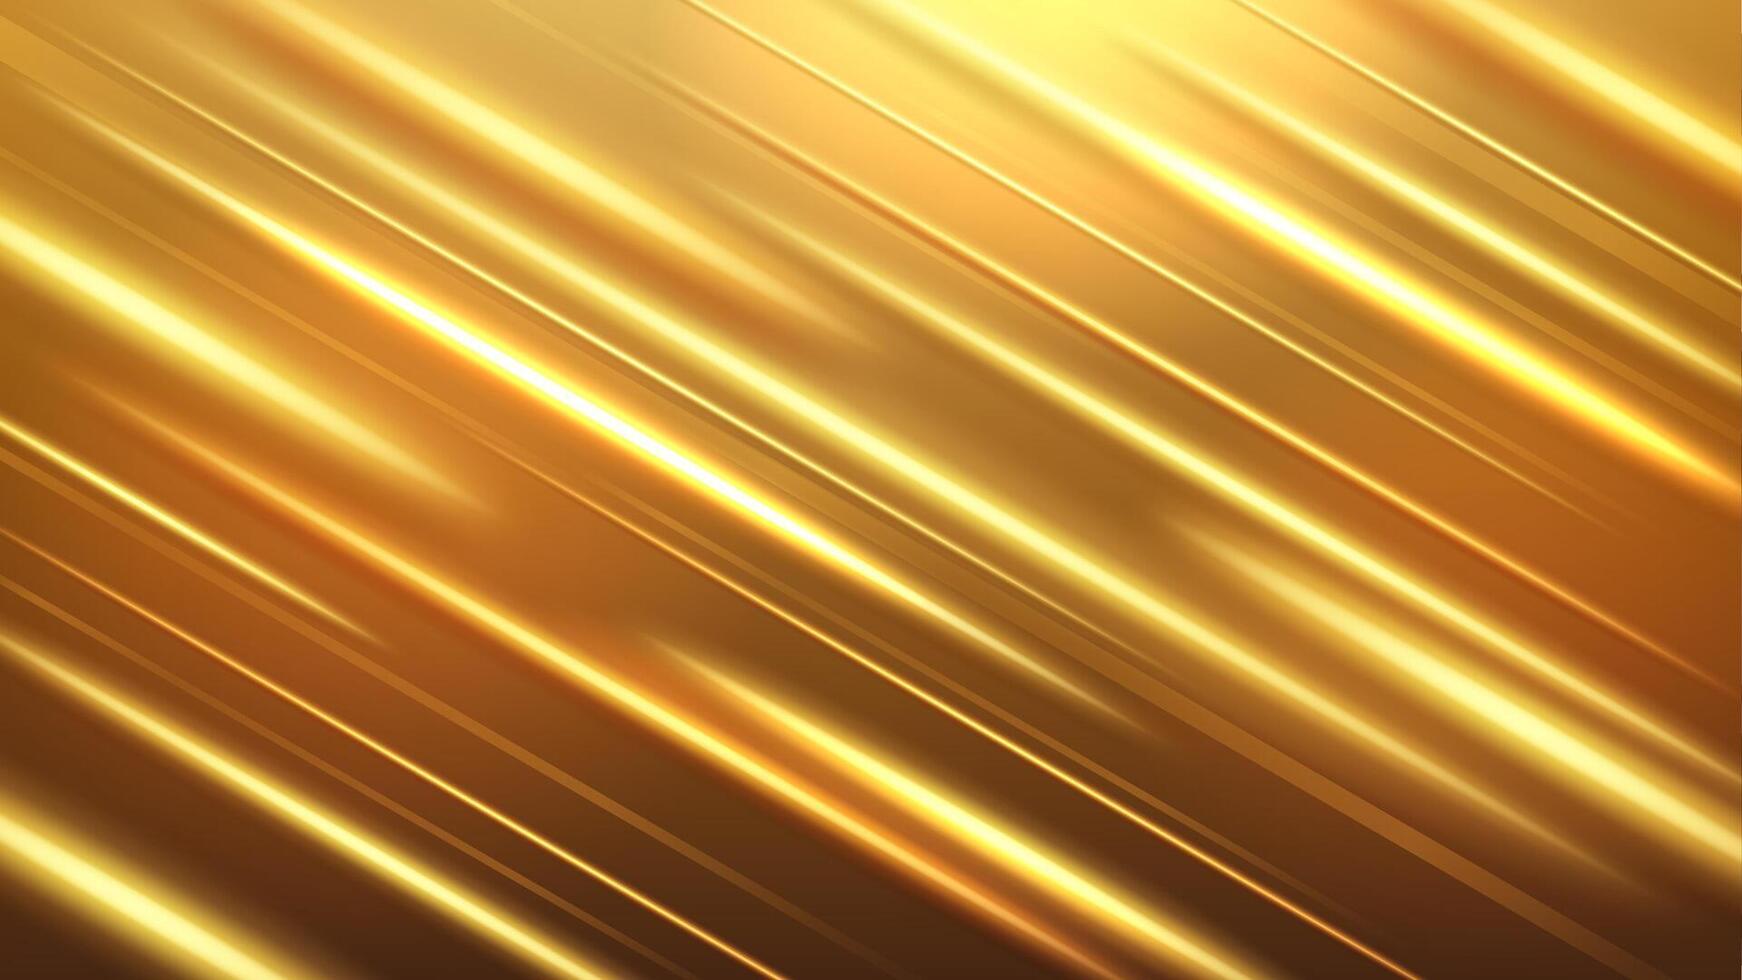 Neon- Gold abstrakt Breitbild Hintergrund, Vektor Illustration